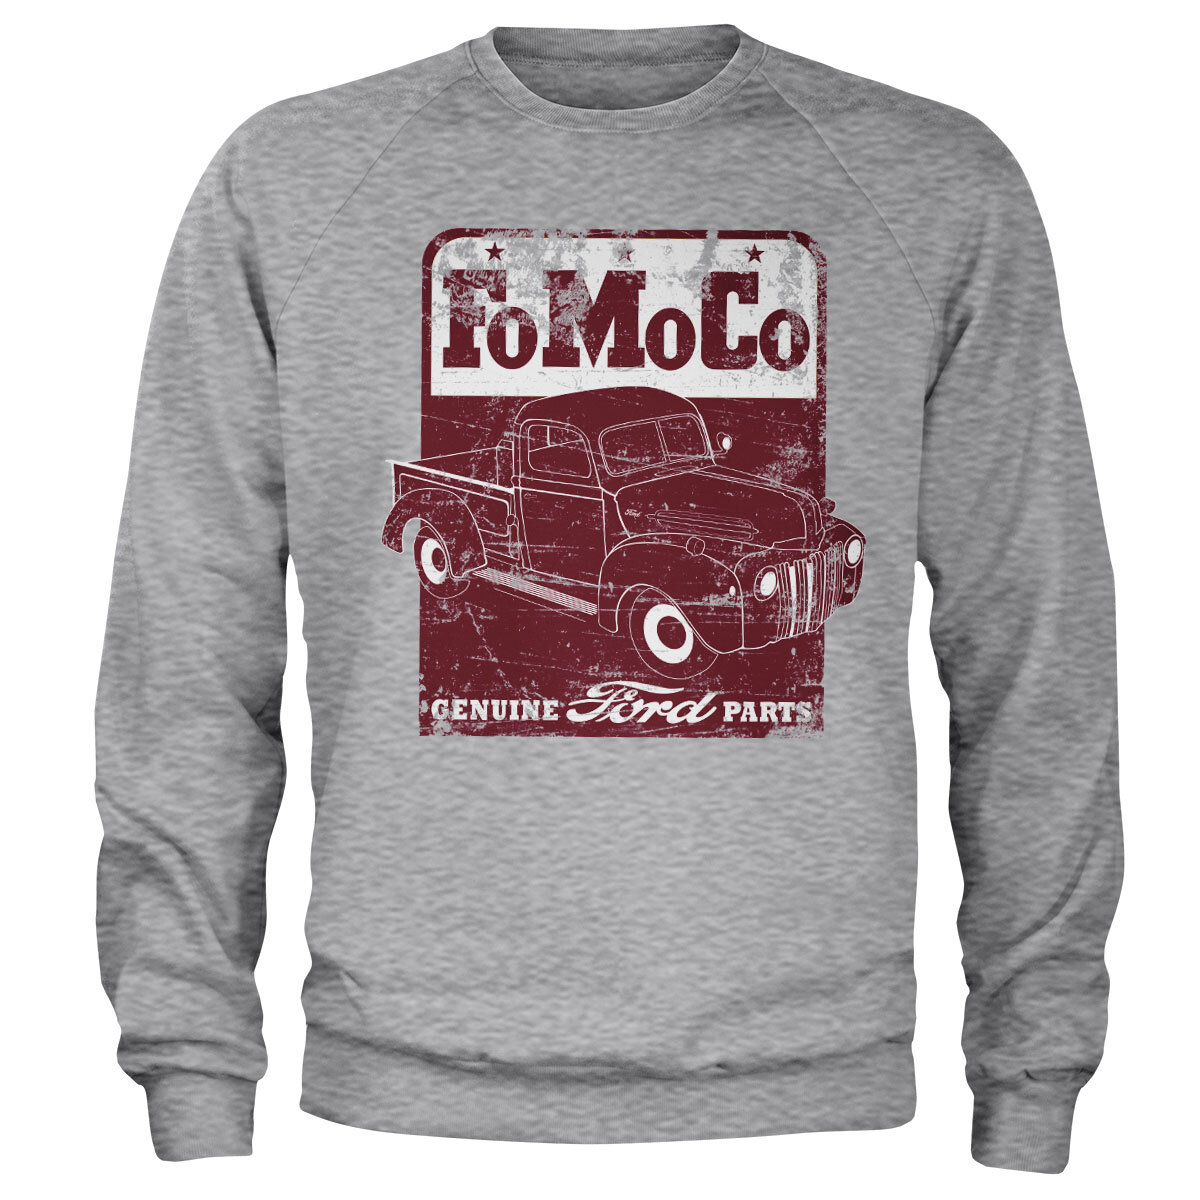 FoMoCo - Genuine Ford Parts Sweatshirt